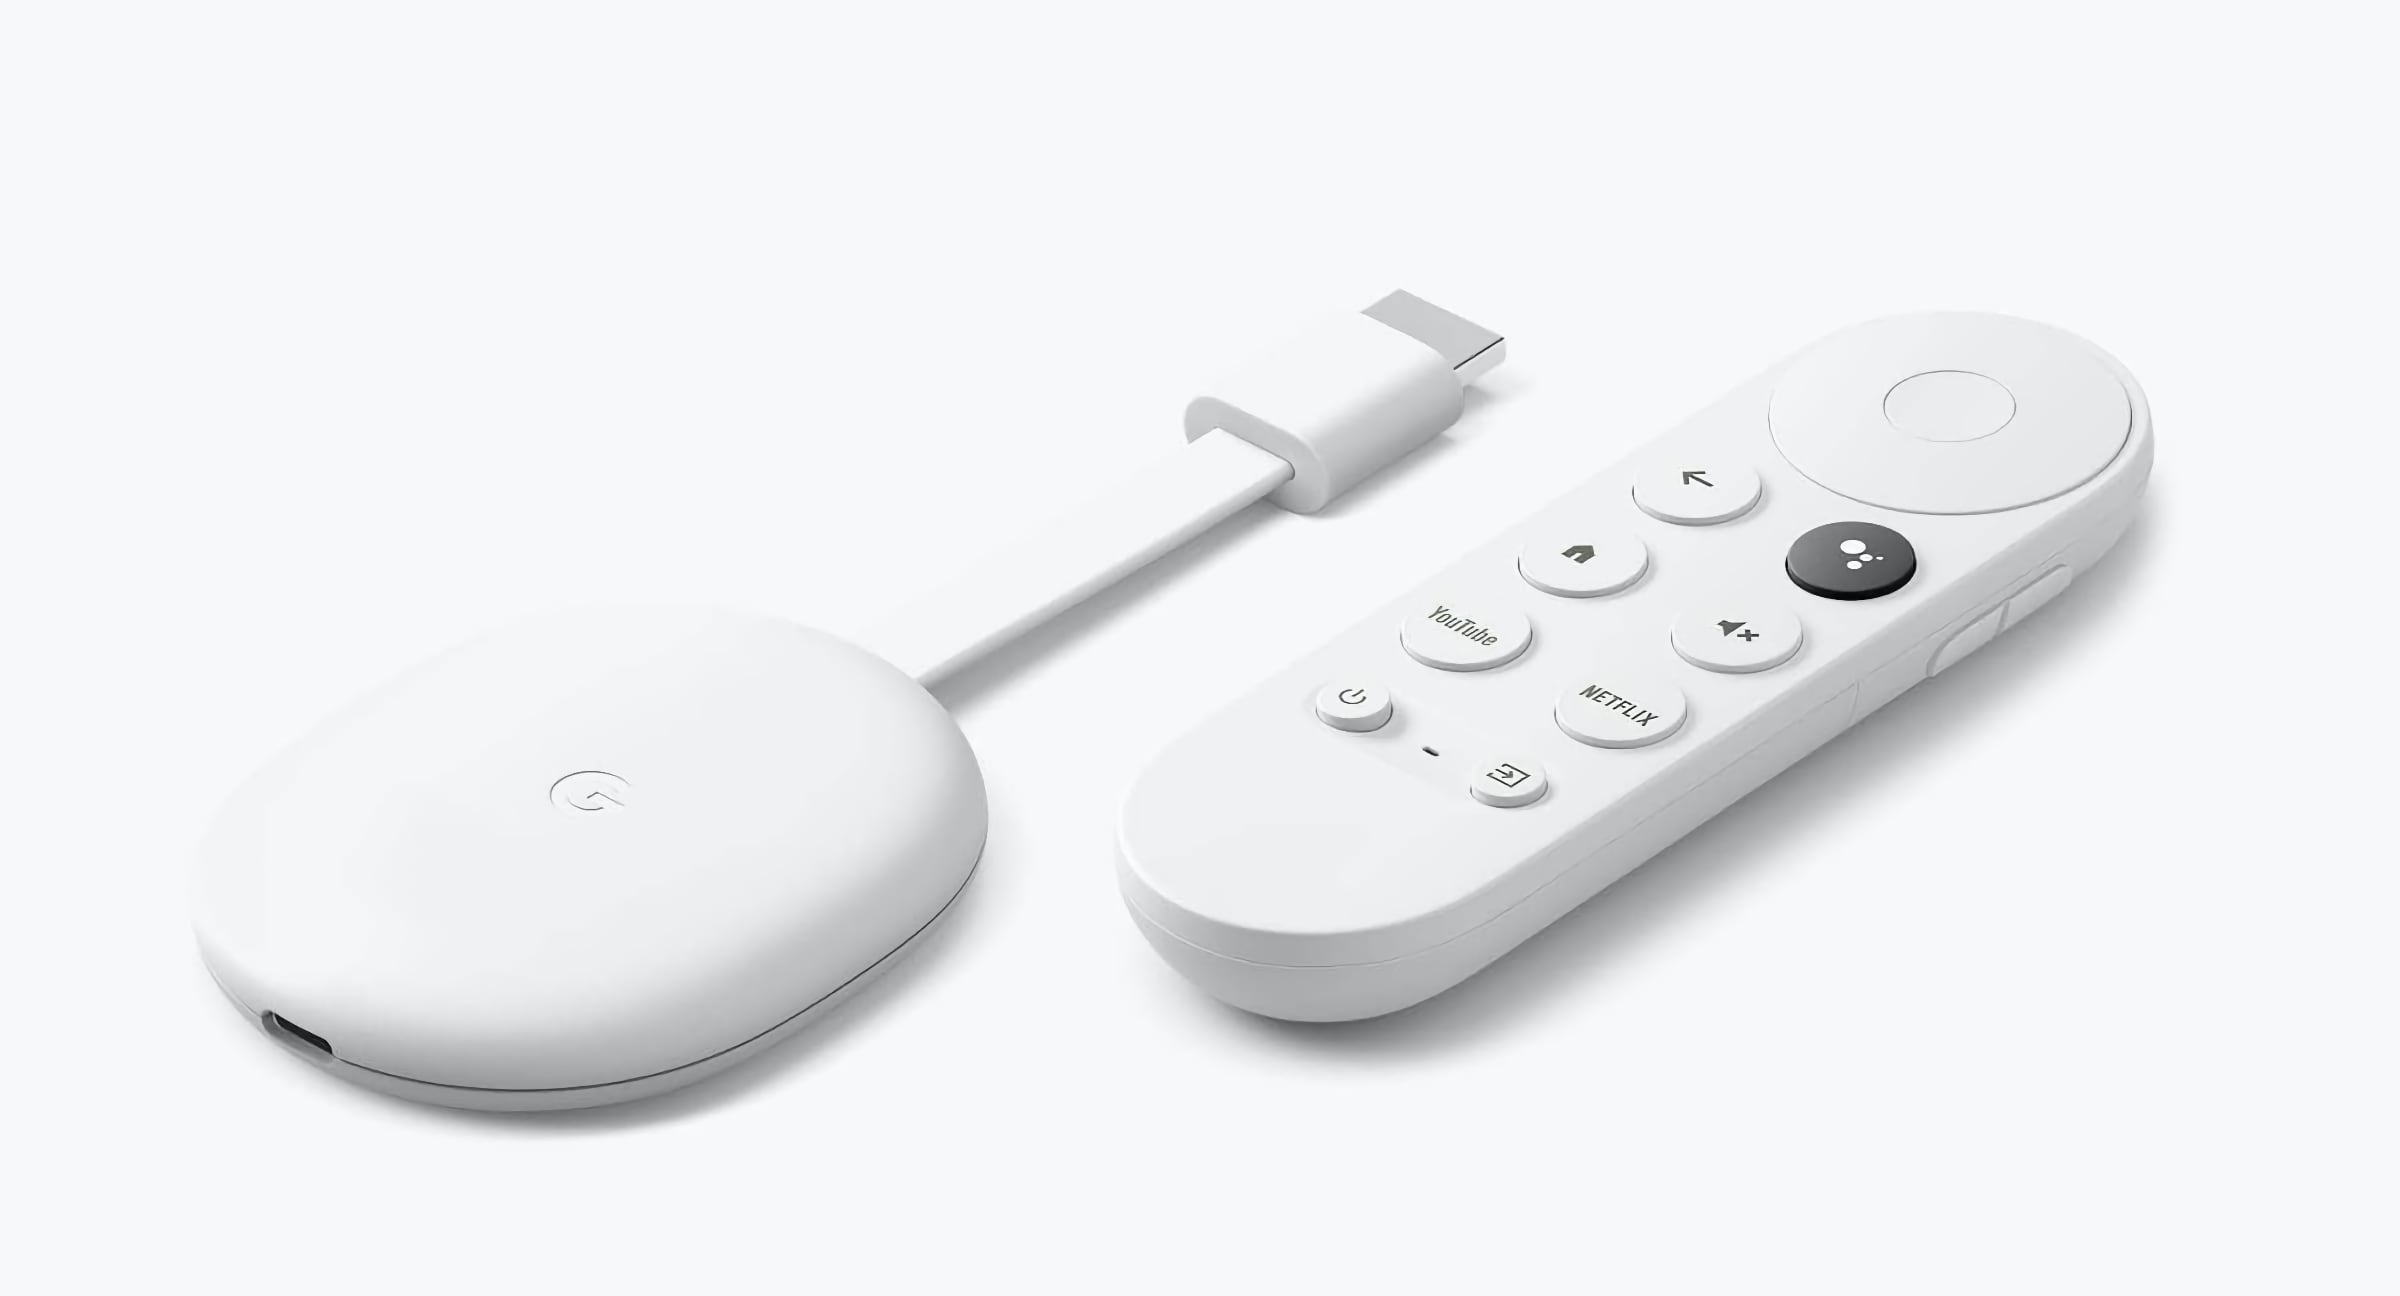 Przystawka Google Chromecast w znakomitej promocji. Rozrywka na dowolnym TV za grosze